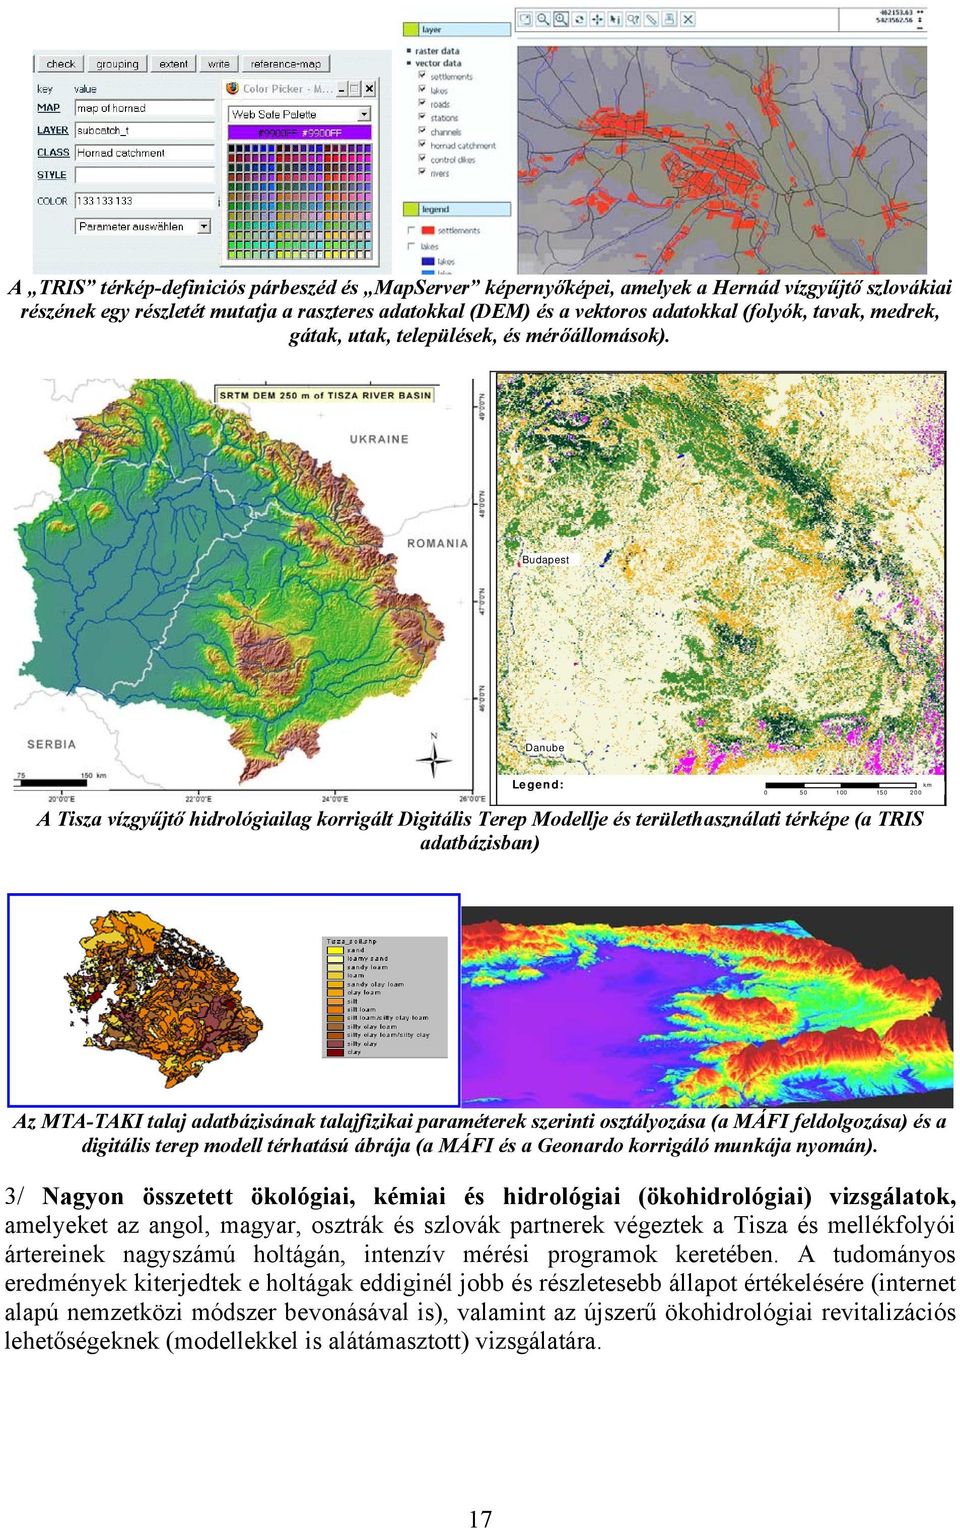 Budapest Danube Legend: km 0 50 100 150 200 l d A Tisza vízgyűjtő hidrológiailag korrigált Digitális Terep Modellje és területhasználati térképe (a TRIS adatbázisban) Az MTA-TAKI talaj adatbázisának